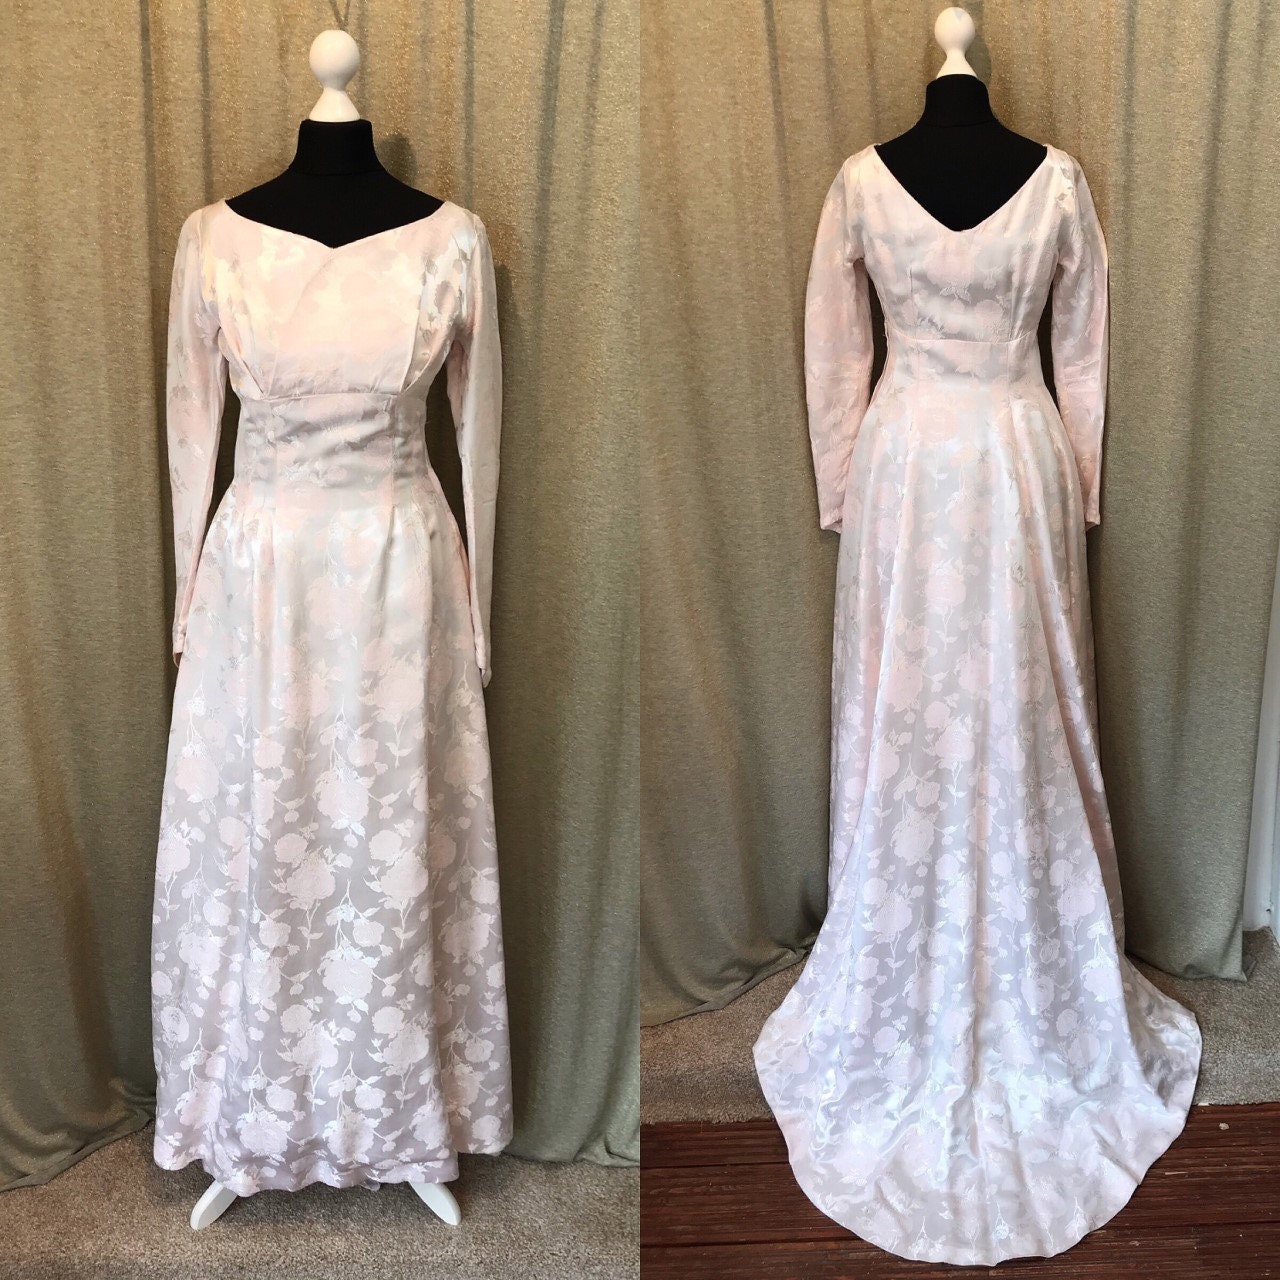 VIntage Wedding Dress 1950s Floral Rose Dress Blush Pink | Etsy